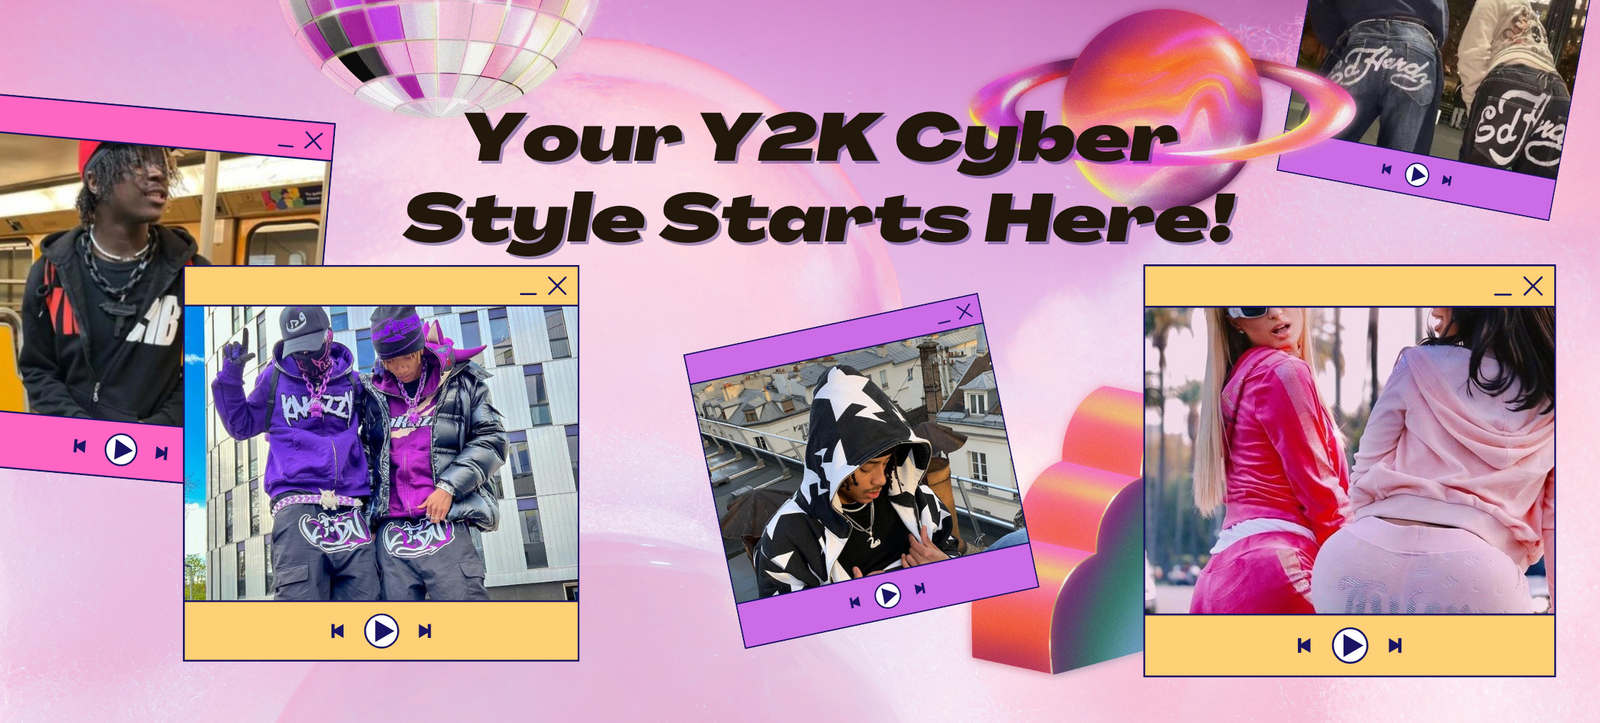 Cyber Y2K Shorts  Y2K Clothing Store